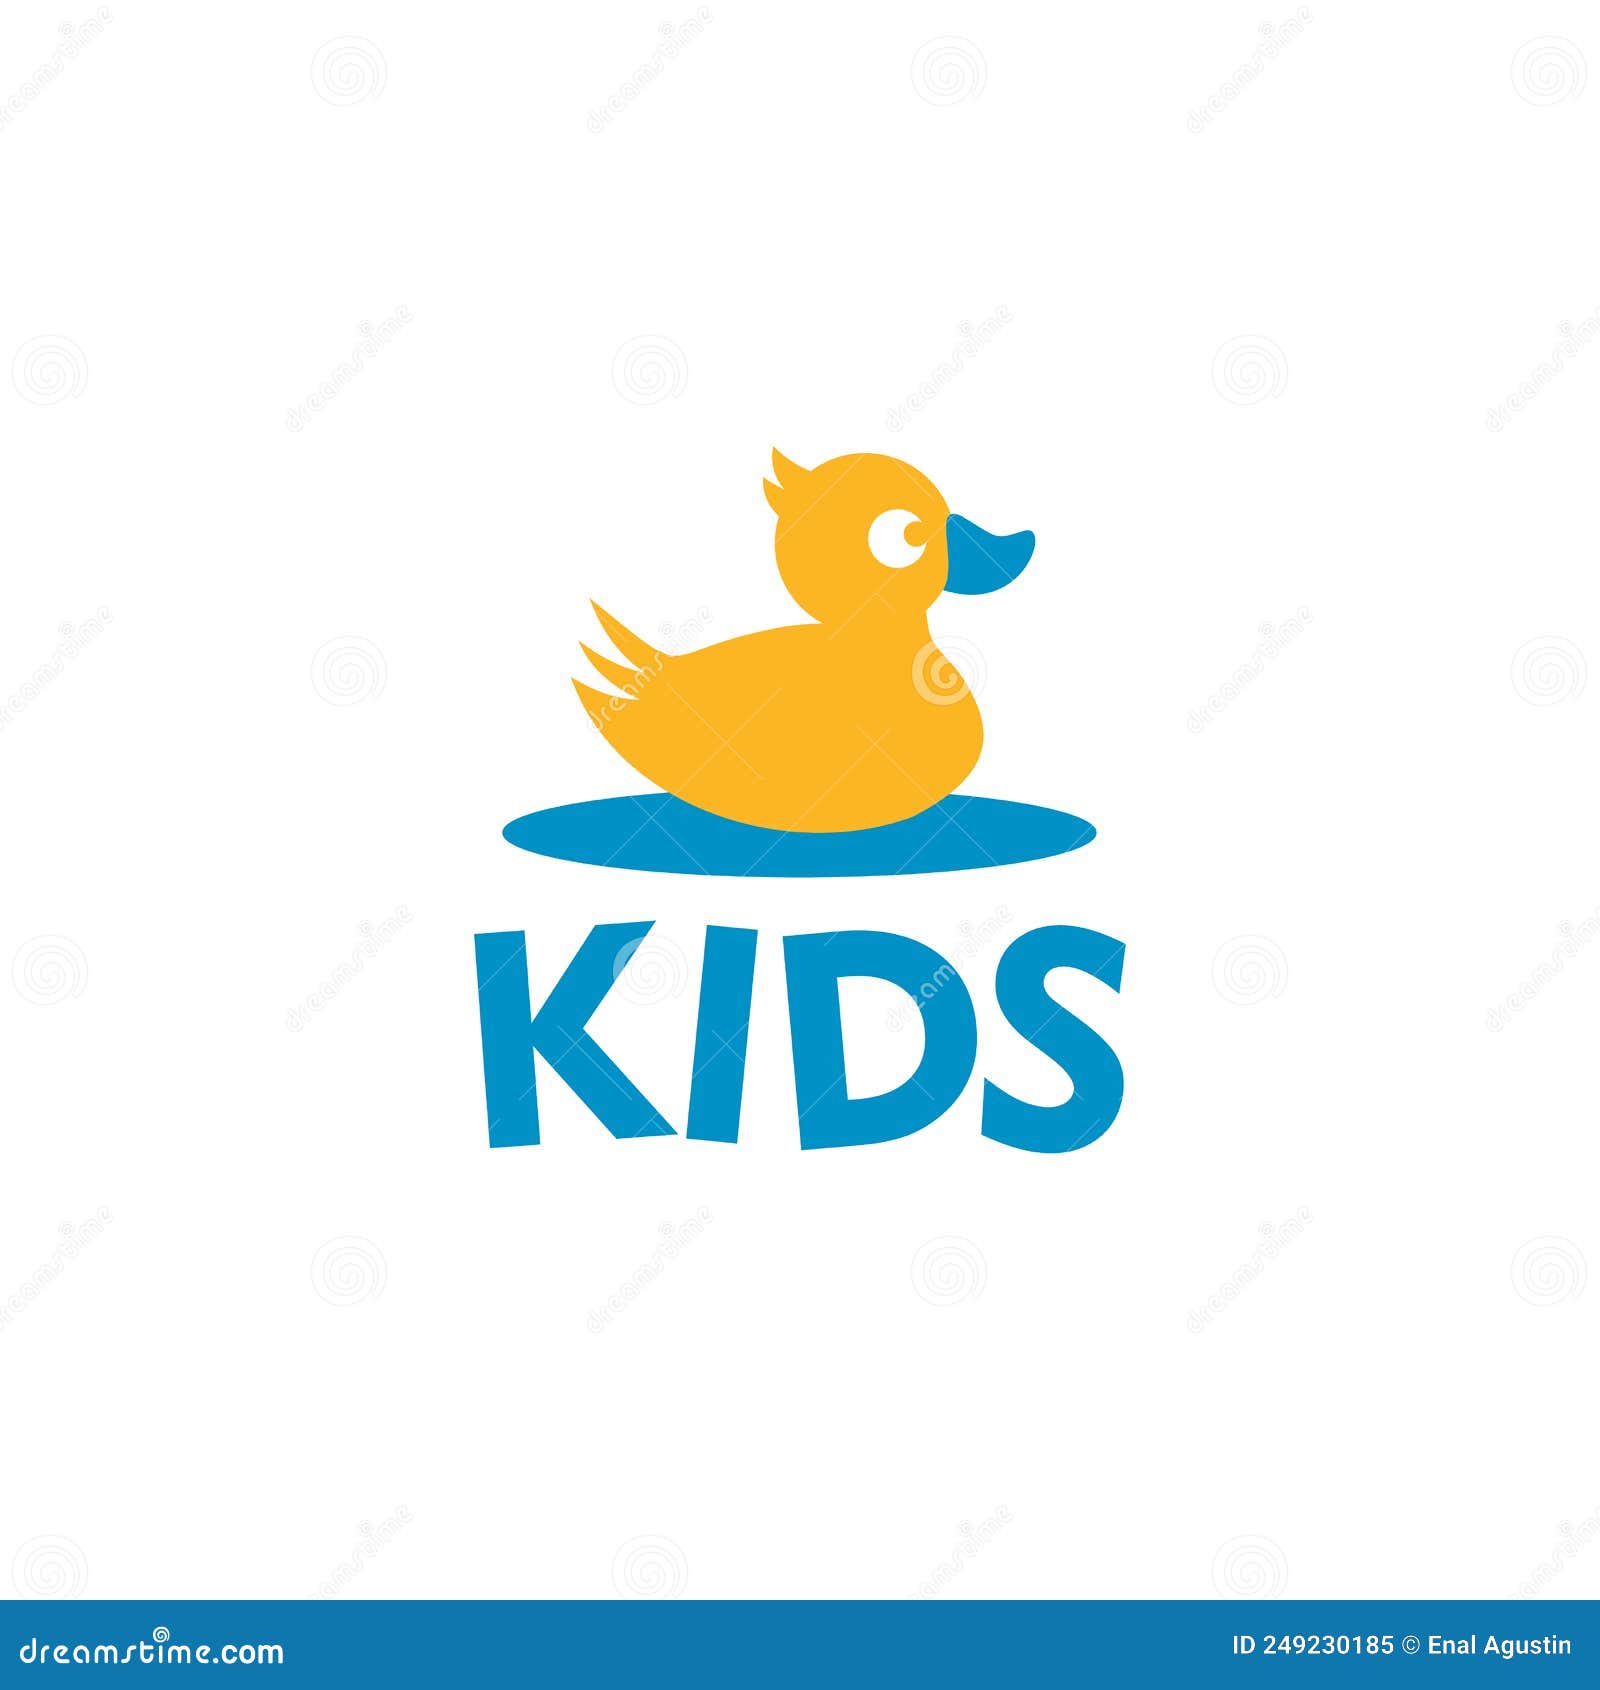 Juegos para Niños Online: El pato en el laberinto